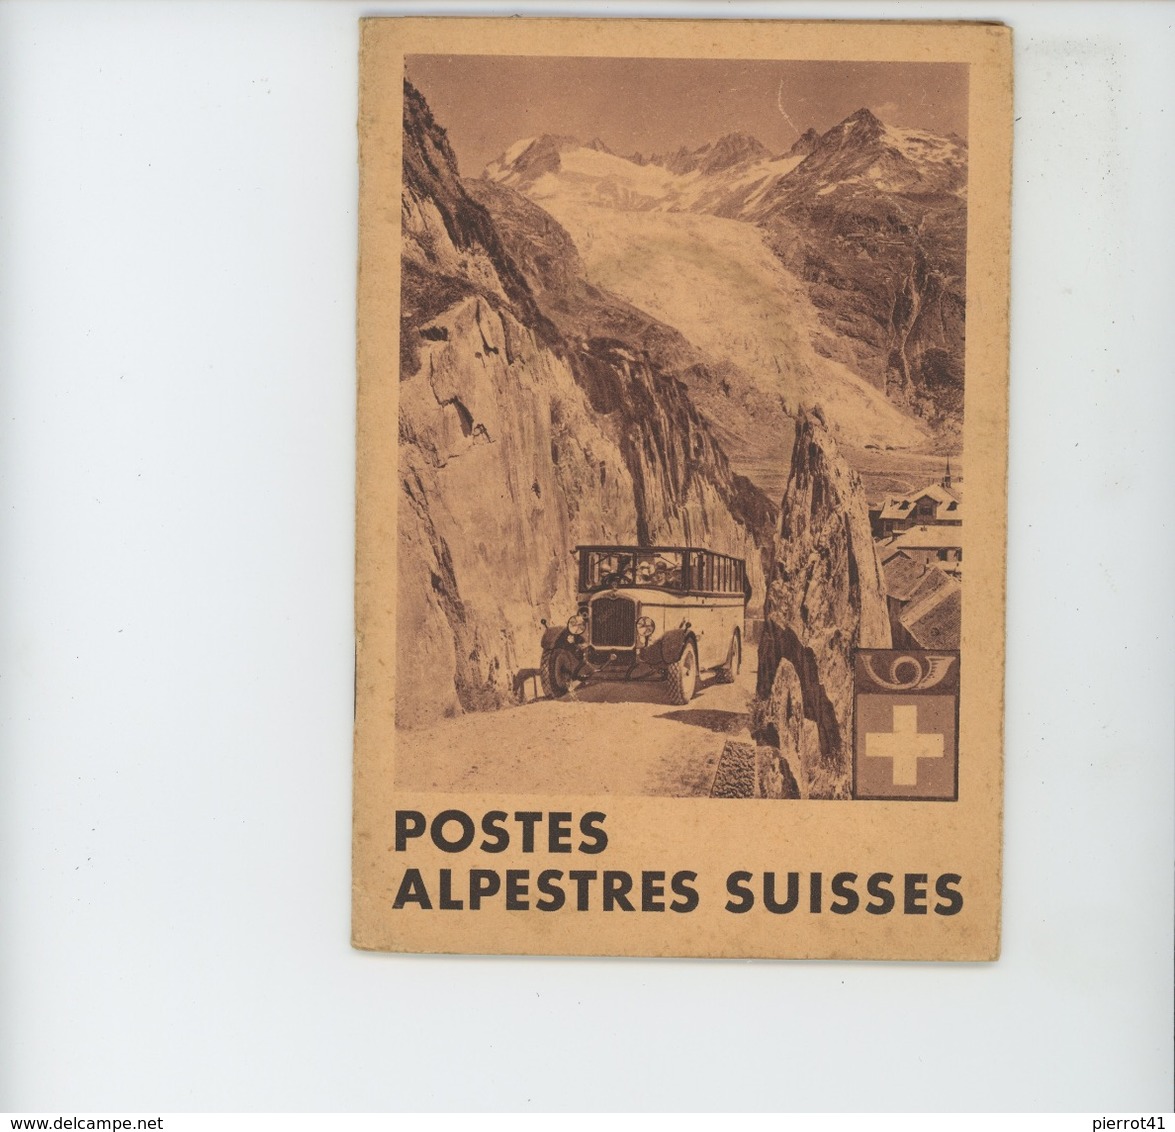 DEPLIANT TOURISTIQUE - SUISSE - SCHWEIZ - POSTES ALPESTRES SUISSES (1929) - Plusieurs Vues Avec Automobiles - Dépliants Touristiques